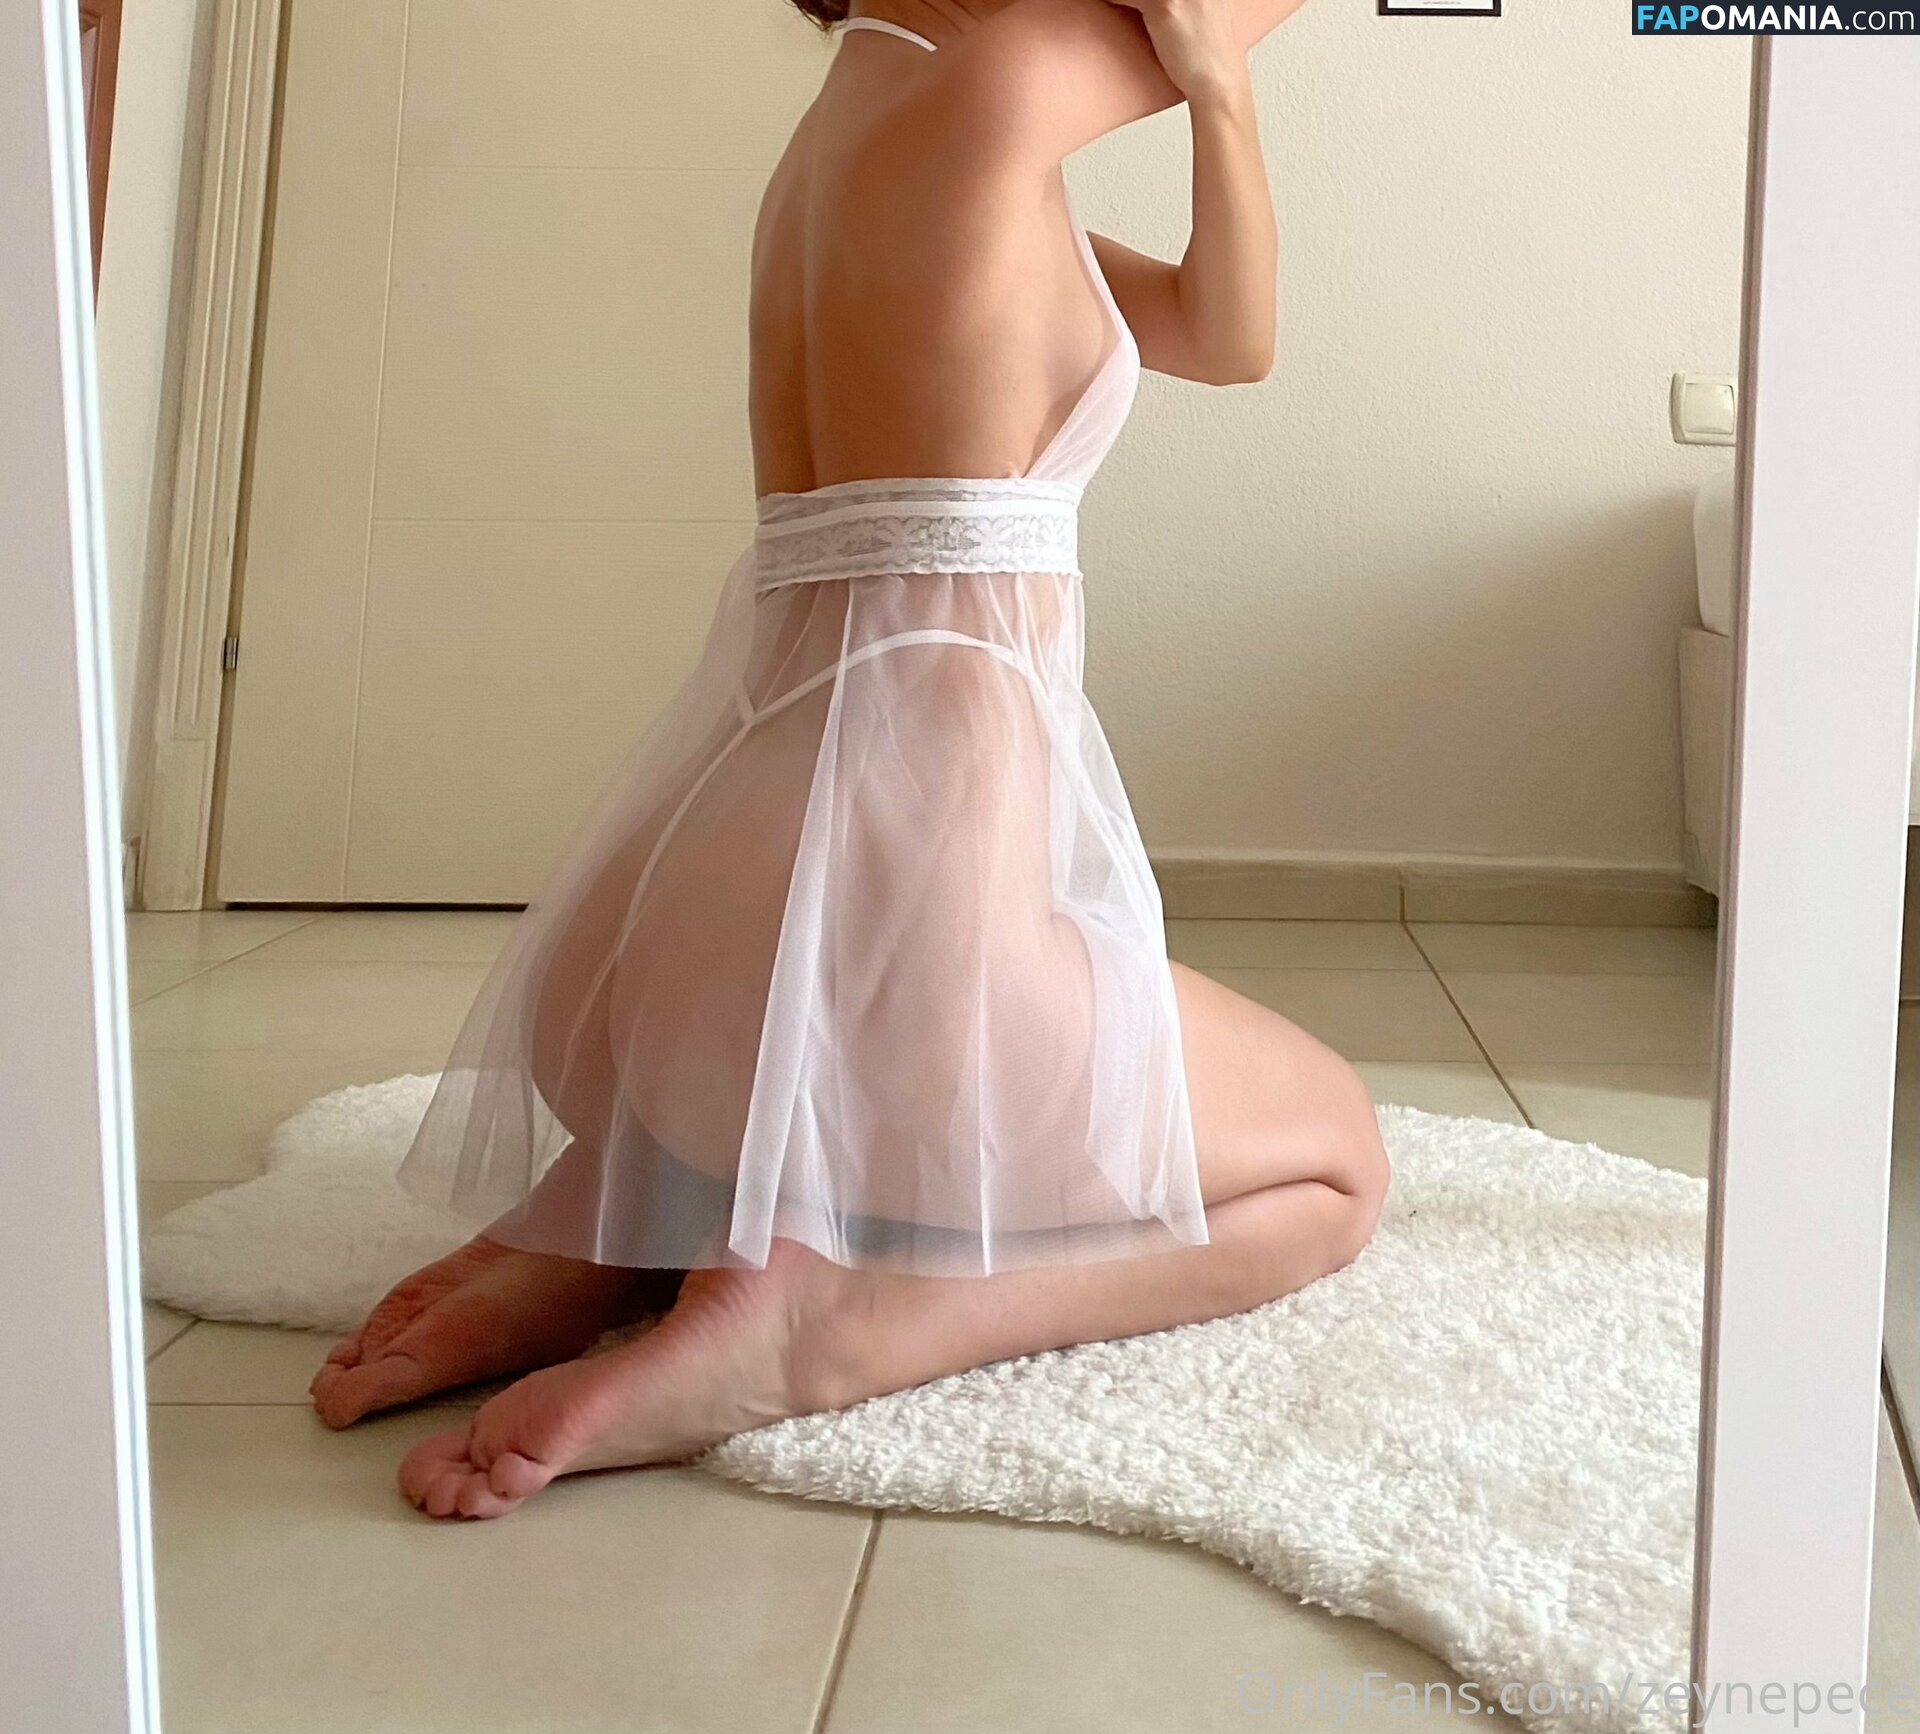 https: / zeeynepece / zeynepece Nude OnlyFans  Leaked Photo #123